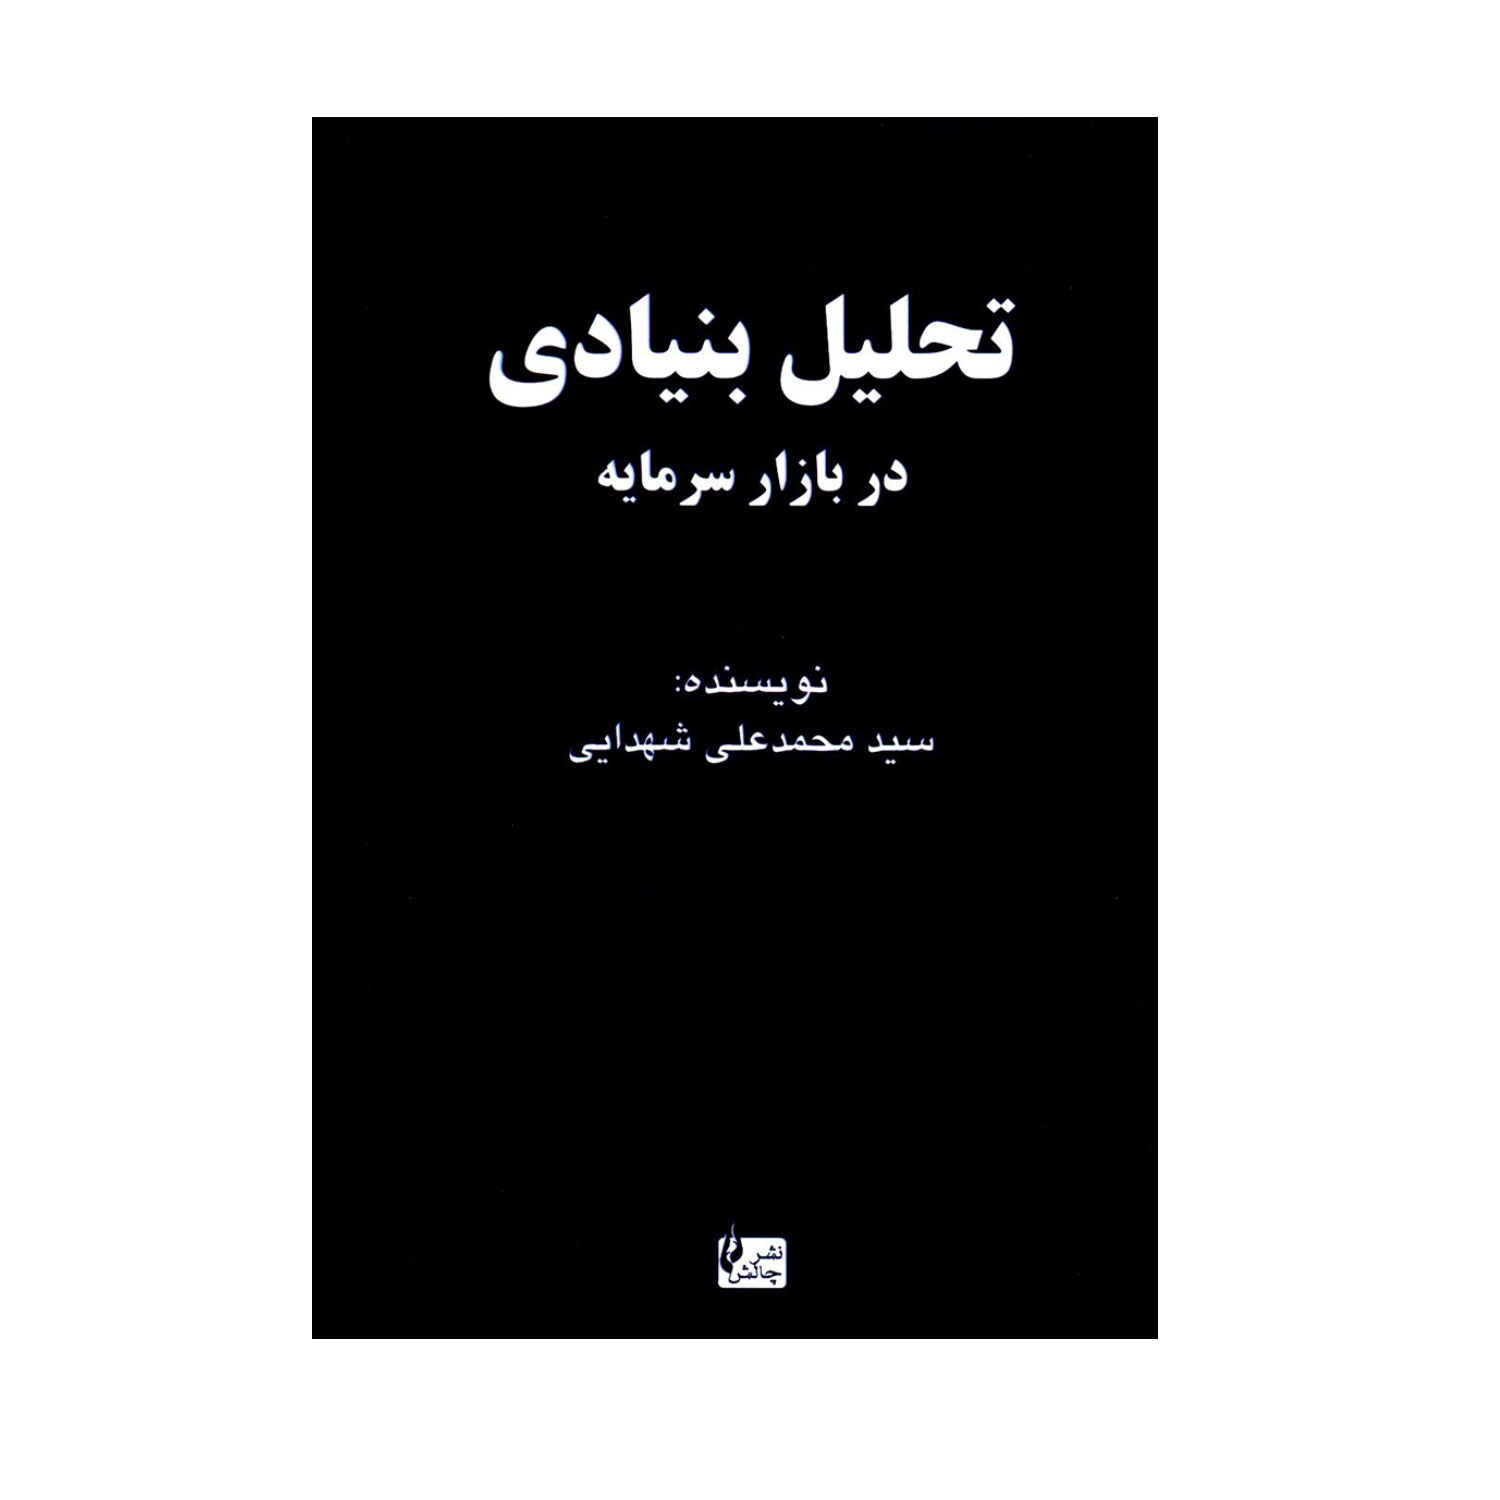  کتاب تحلیل بنیادی در بازار سرمایه اثر سید محمد علی شهدایی انتشارات چالش